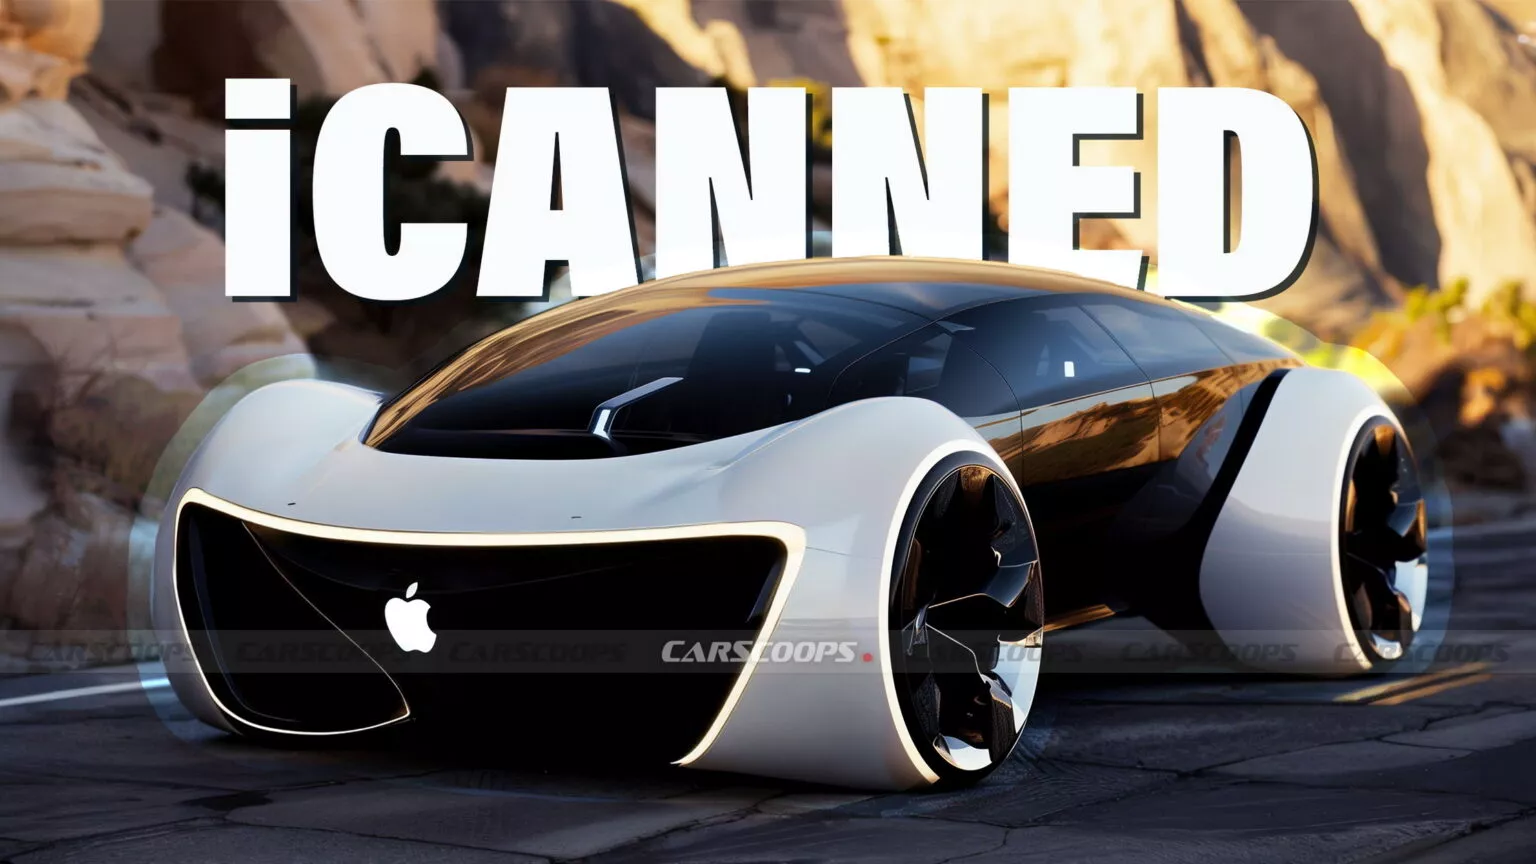 Apple khai tử dự án xe điện iCar  sau 10 năm phát triển, sa thải gần 2.000 nhân viên